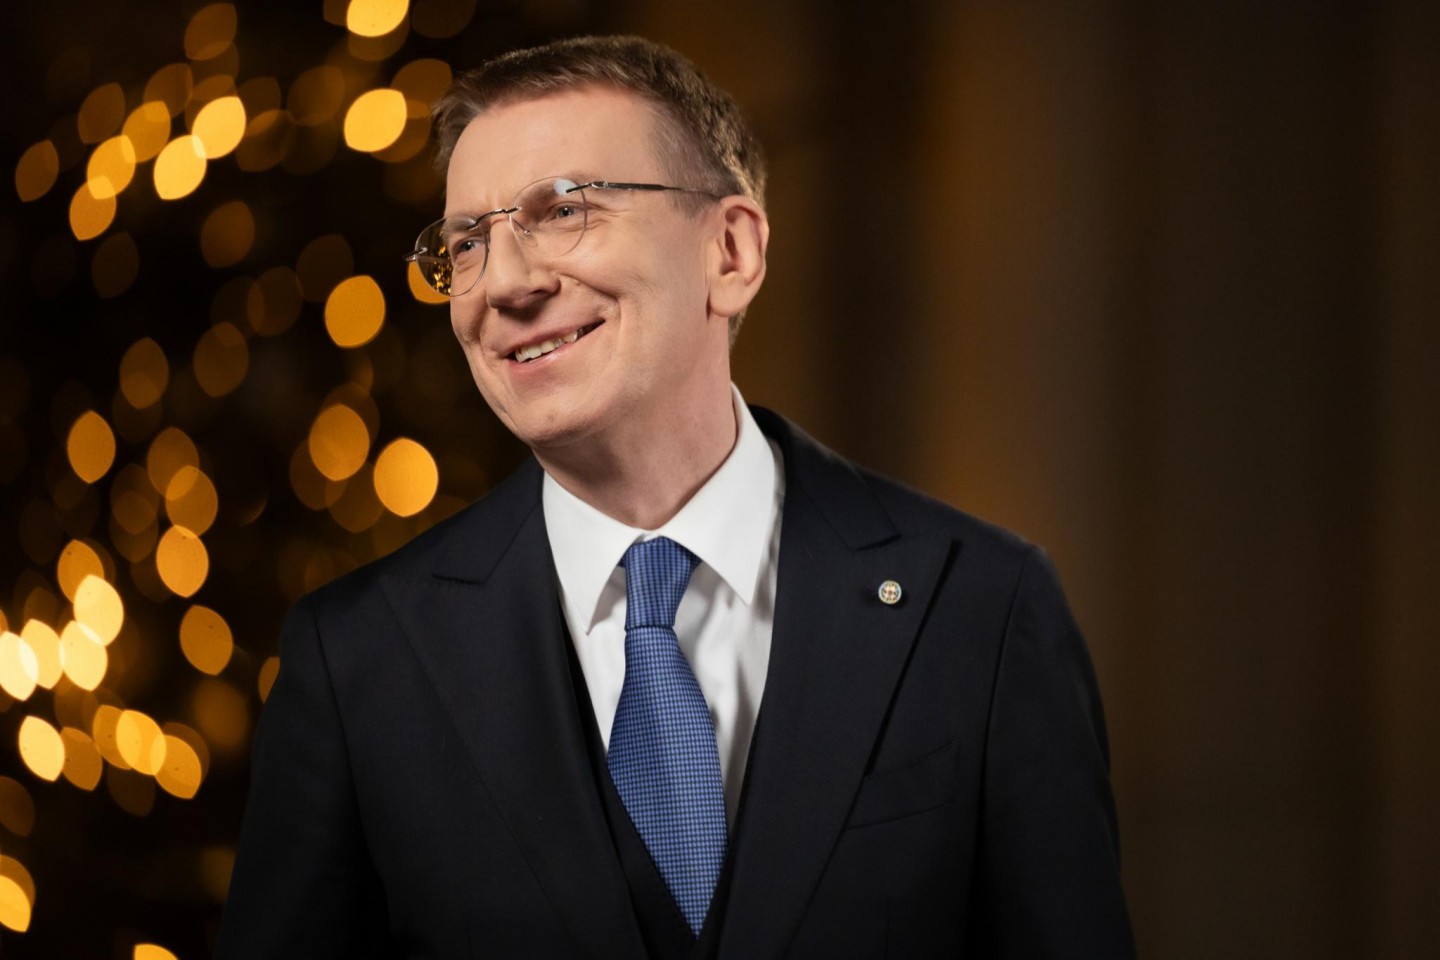 Kritizēts par pīrādziņiem un par "katram savu Latviju". Valsts prezidenta Edgara Rinkēviča uzruna gadumijā (Bilde 1)